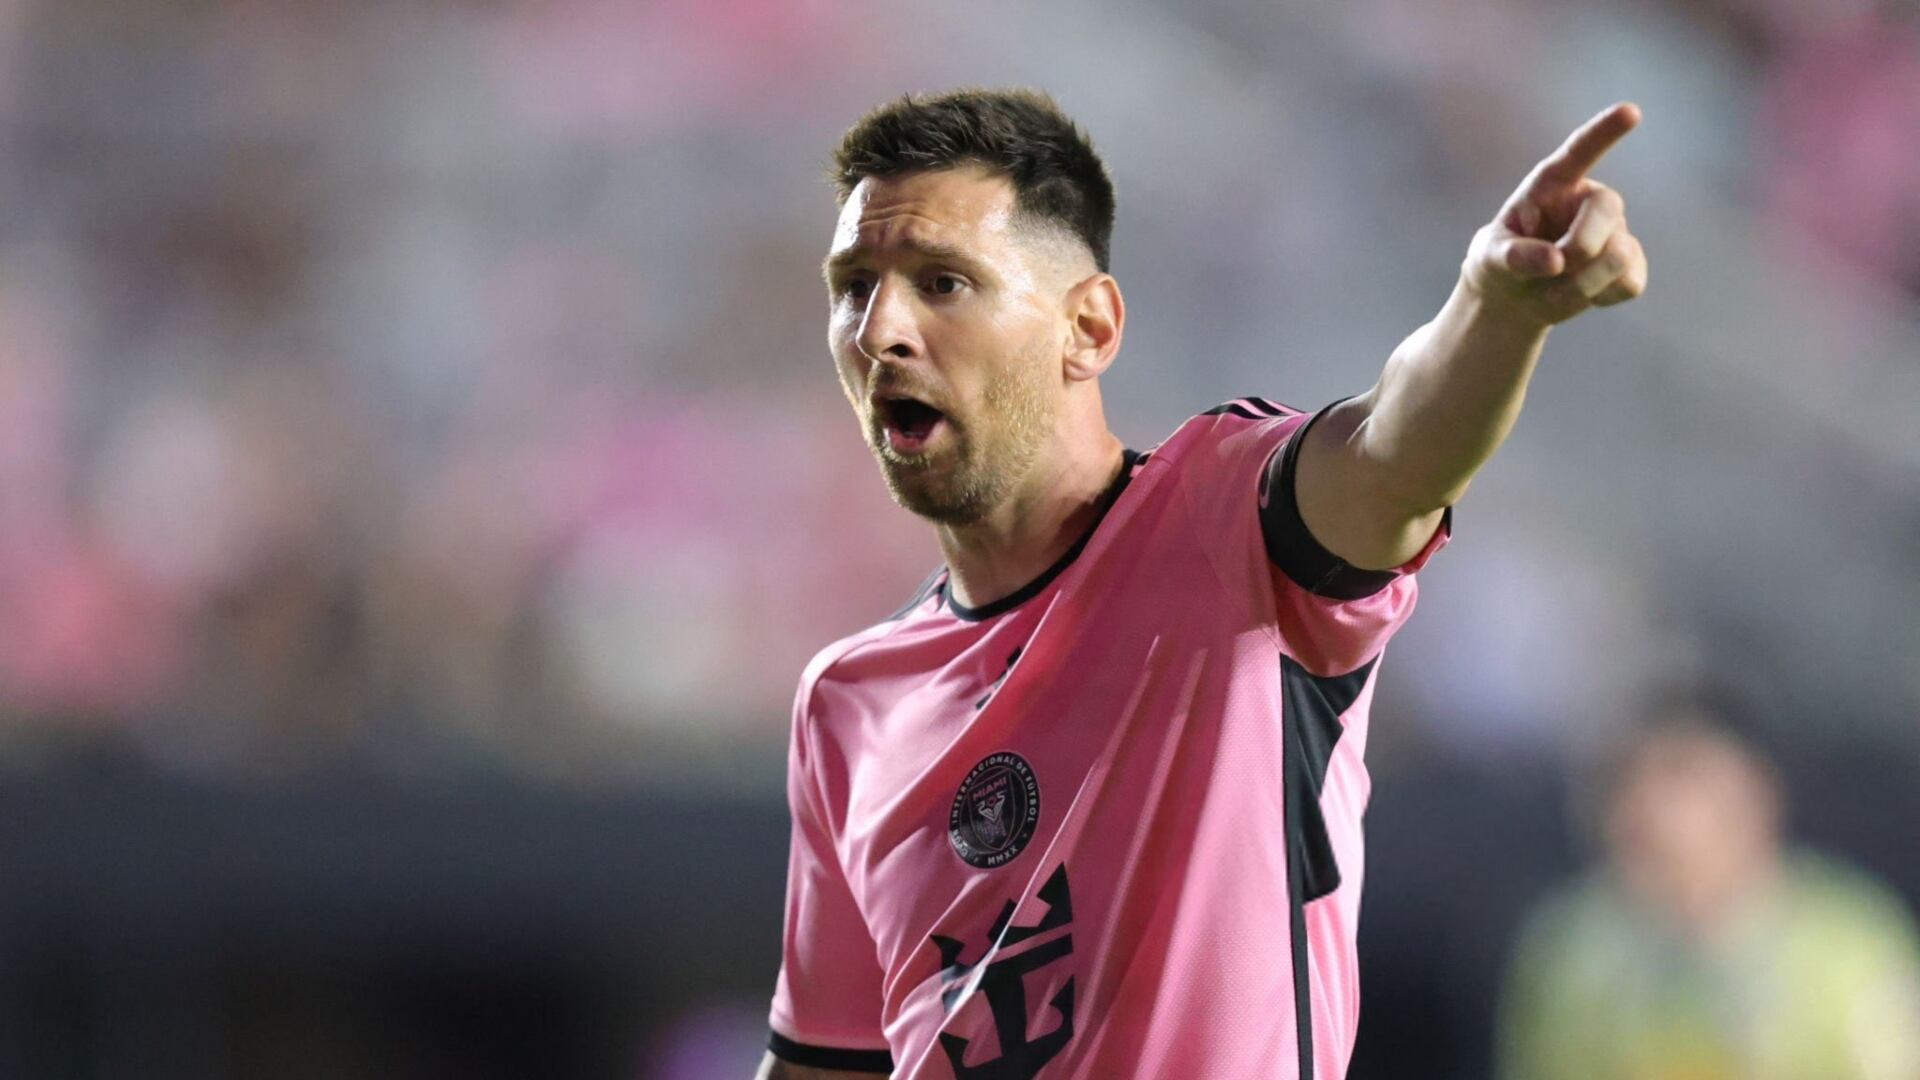 El nuevo récord que rompió Messi en la MLS, pero no es para ganar Balón de Oro